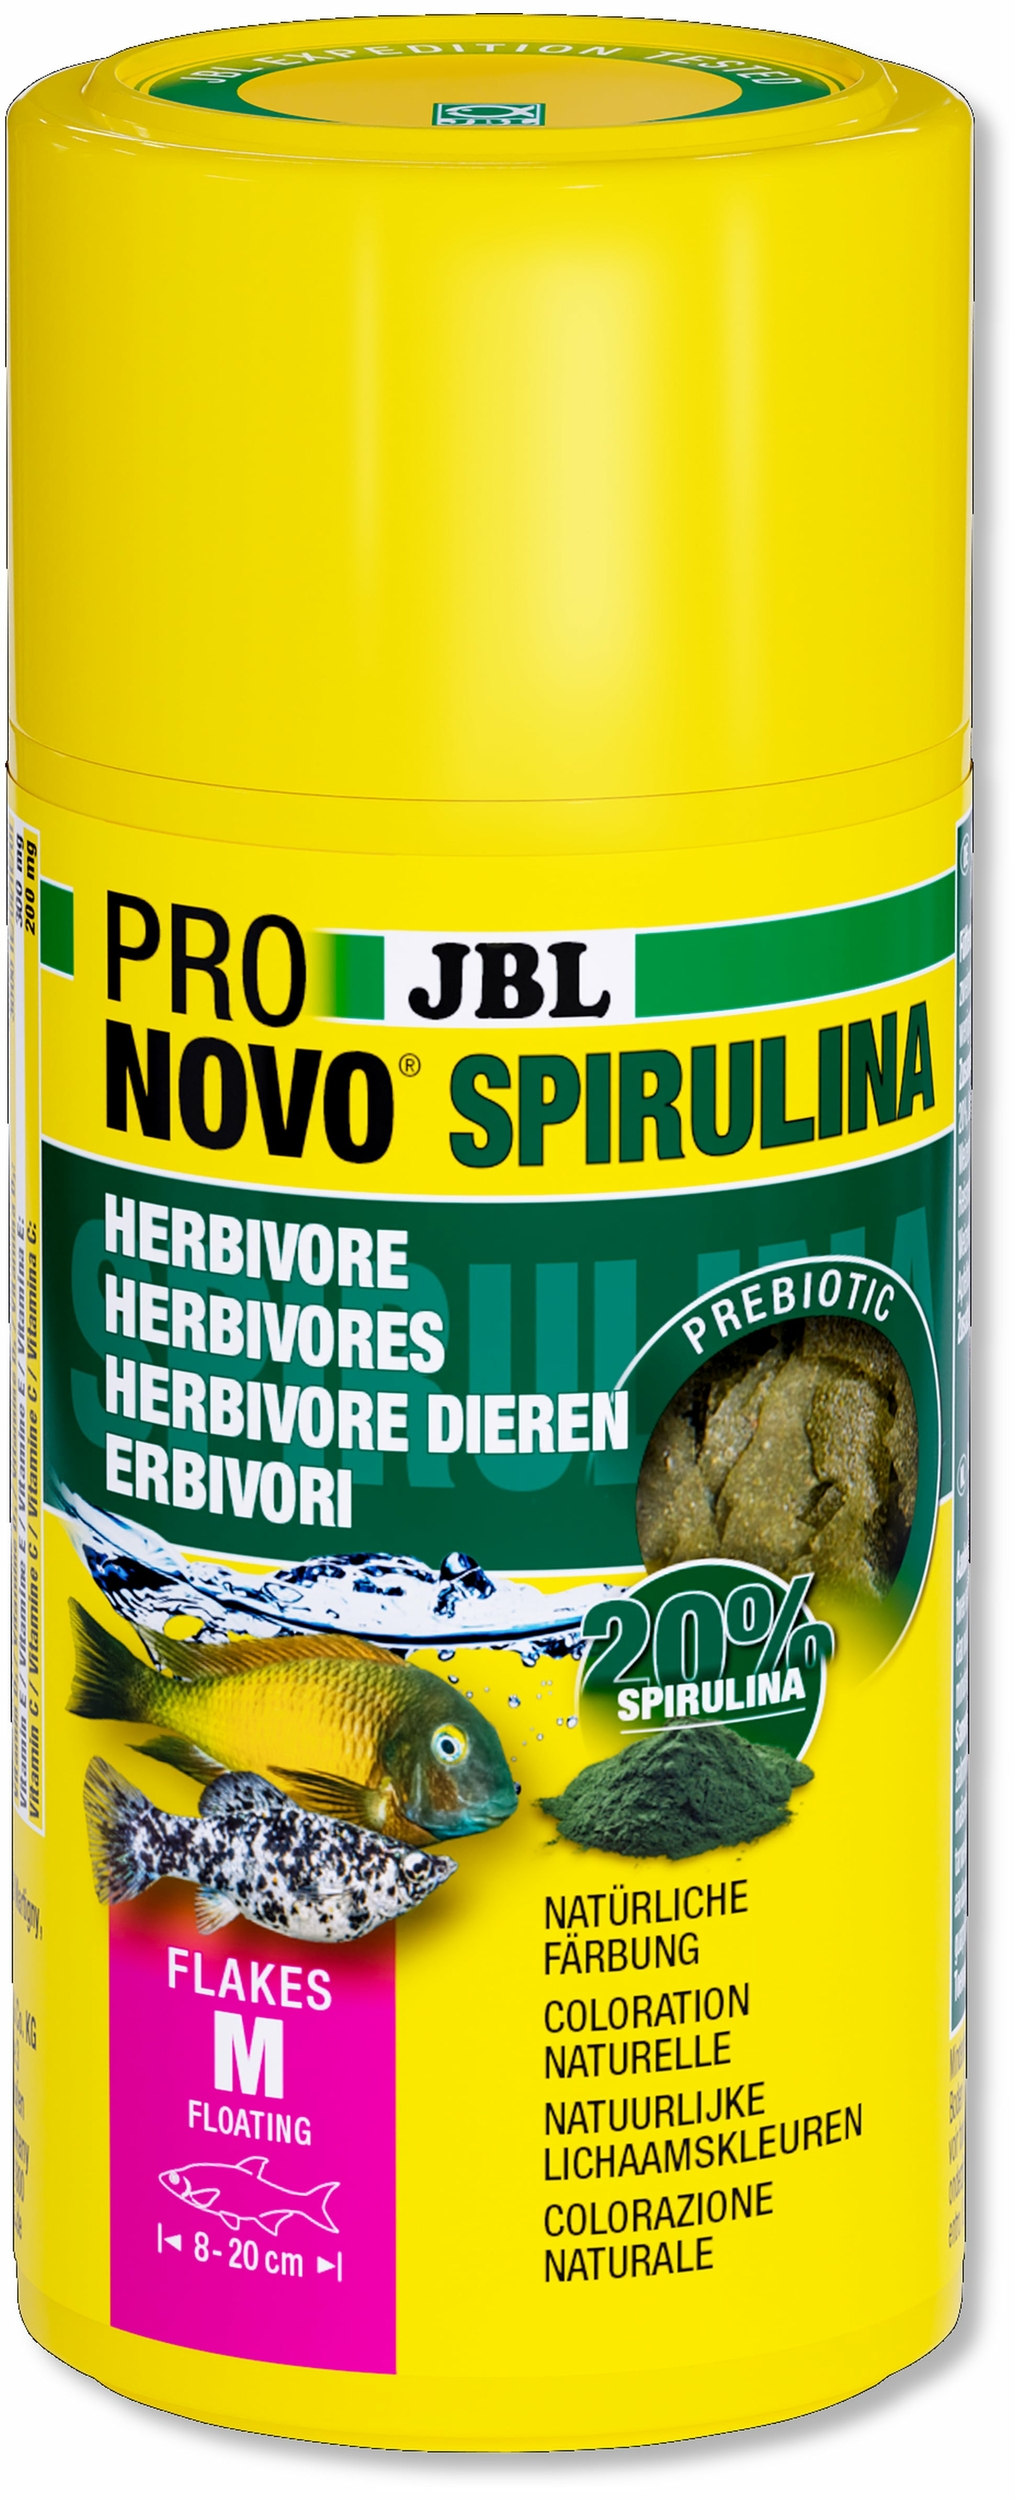 jbl-pronovo-spirulina-flakes-m-100-ml-nourriture-en-flocons-a-base-de-spiruline-pour-tous-poissons-d-aquarium-de-8-a-20-cm